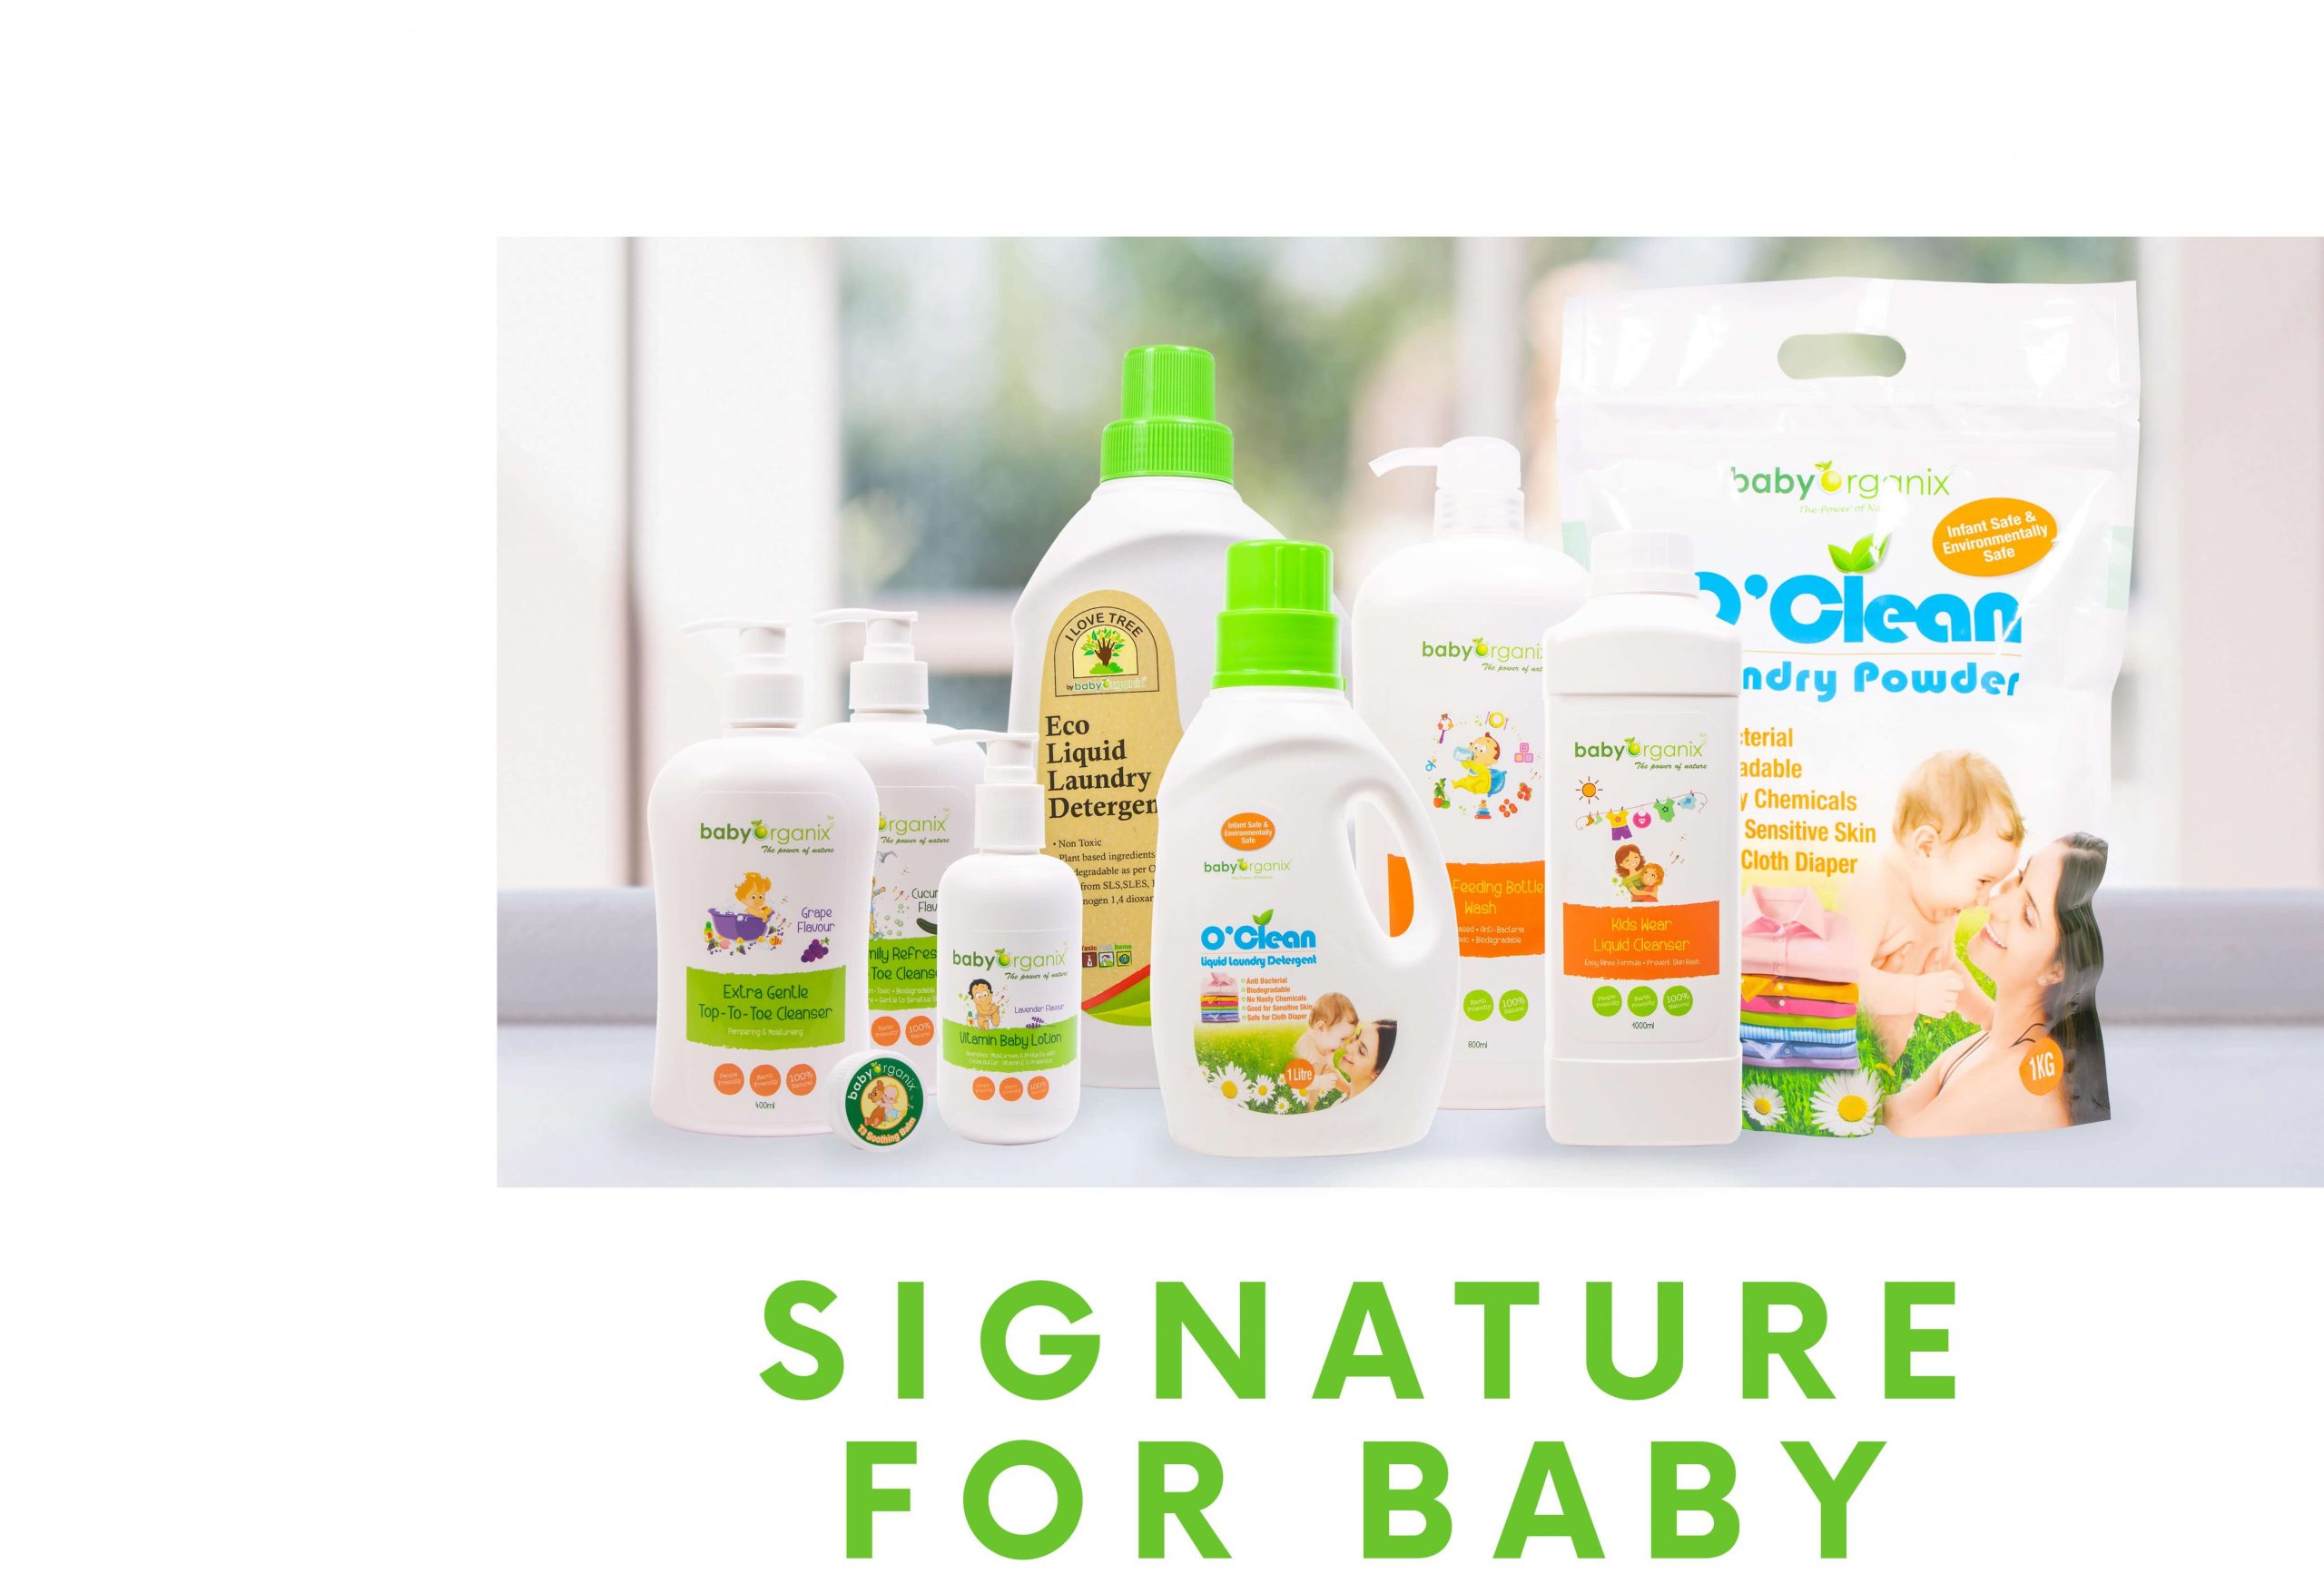 Babyorganix Signature For Baby Banner